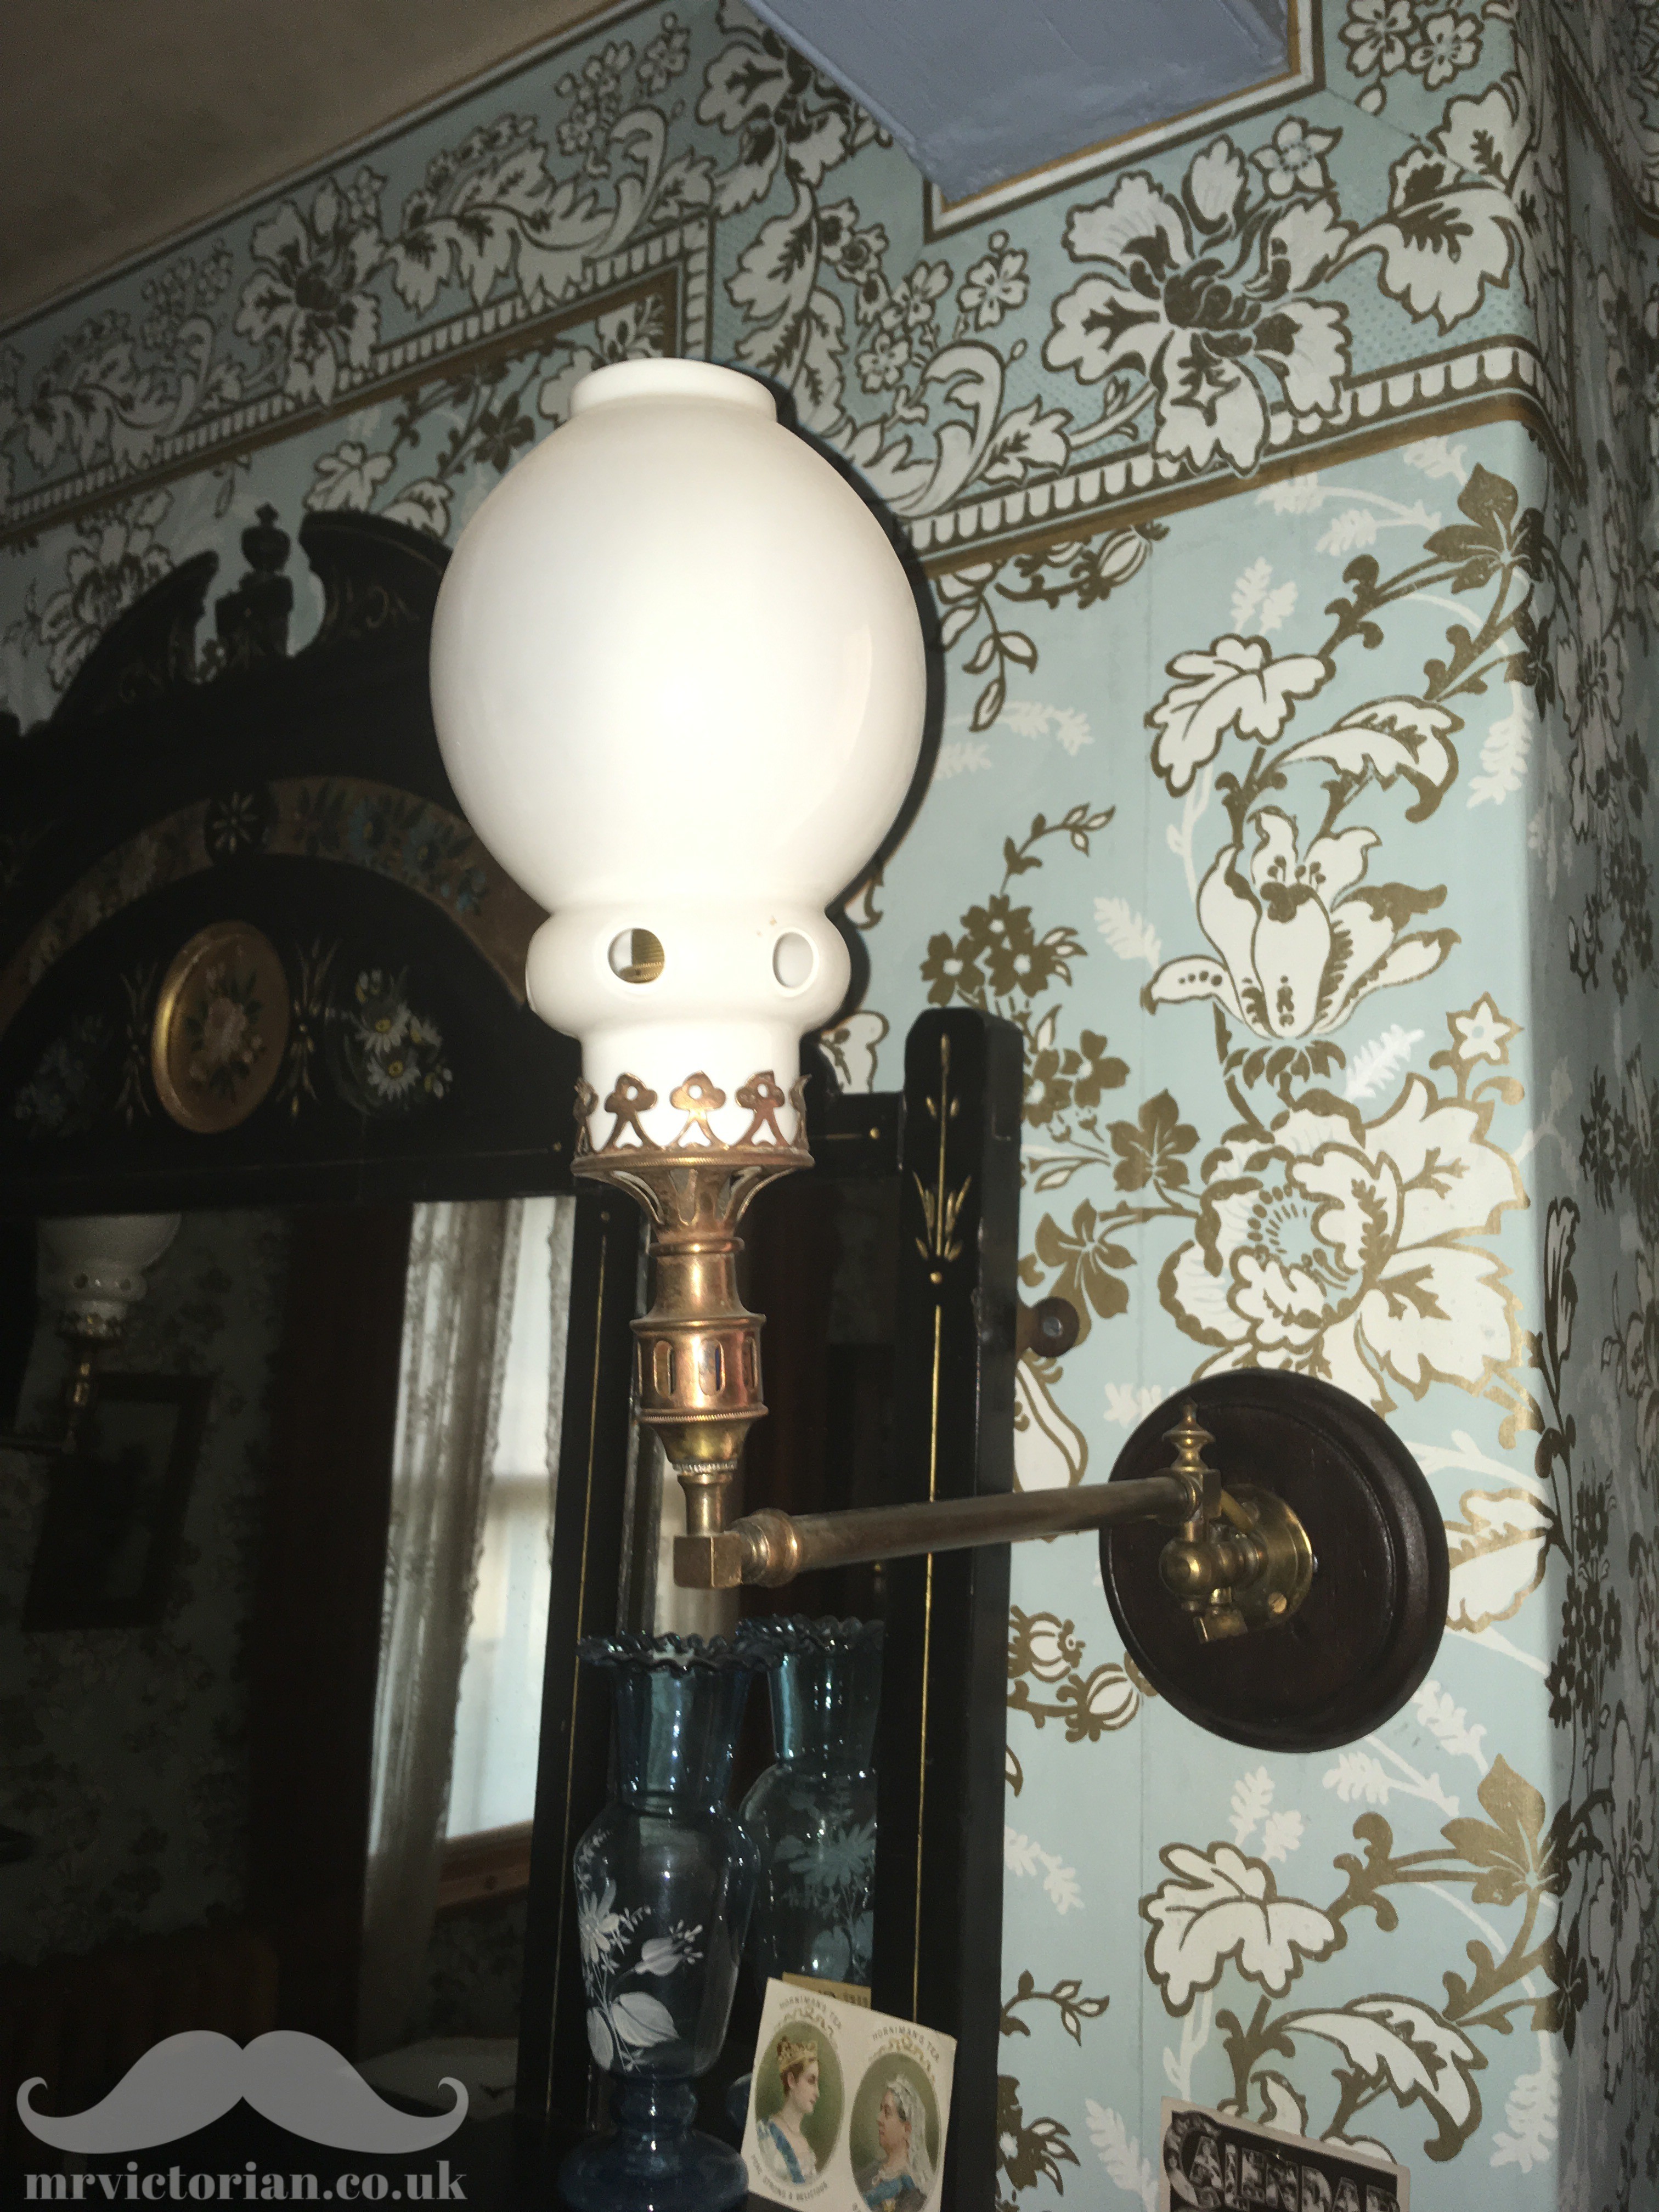 Antique lighting - Victorian upright incandescent burner on gas light lamp